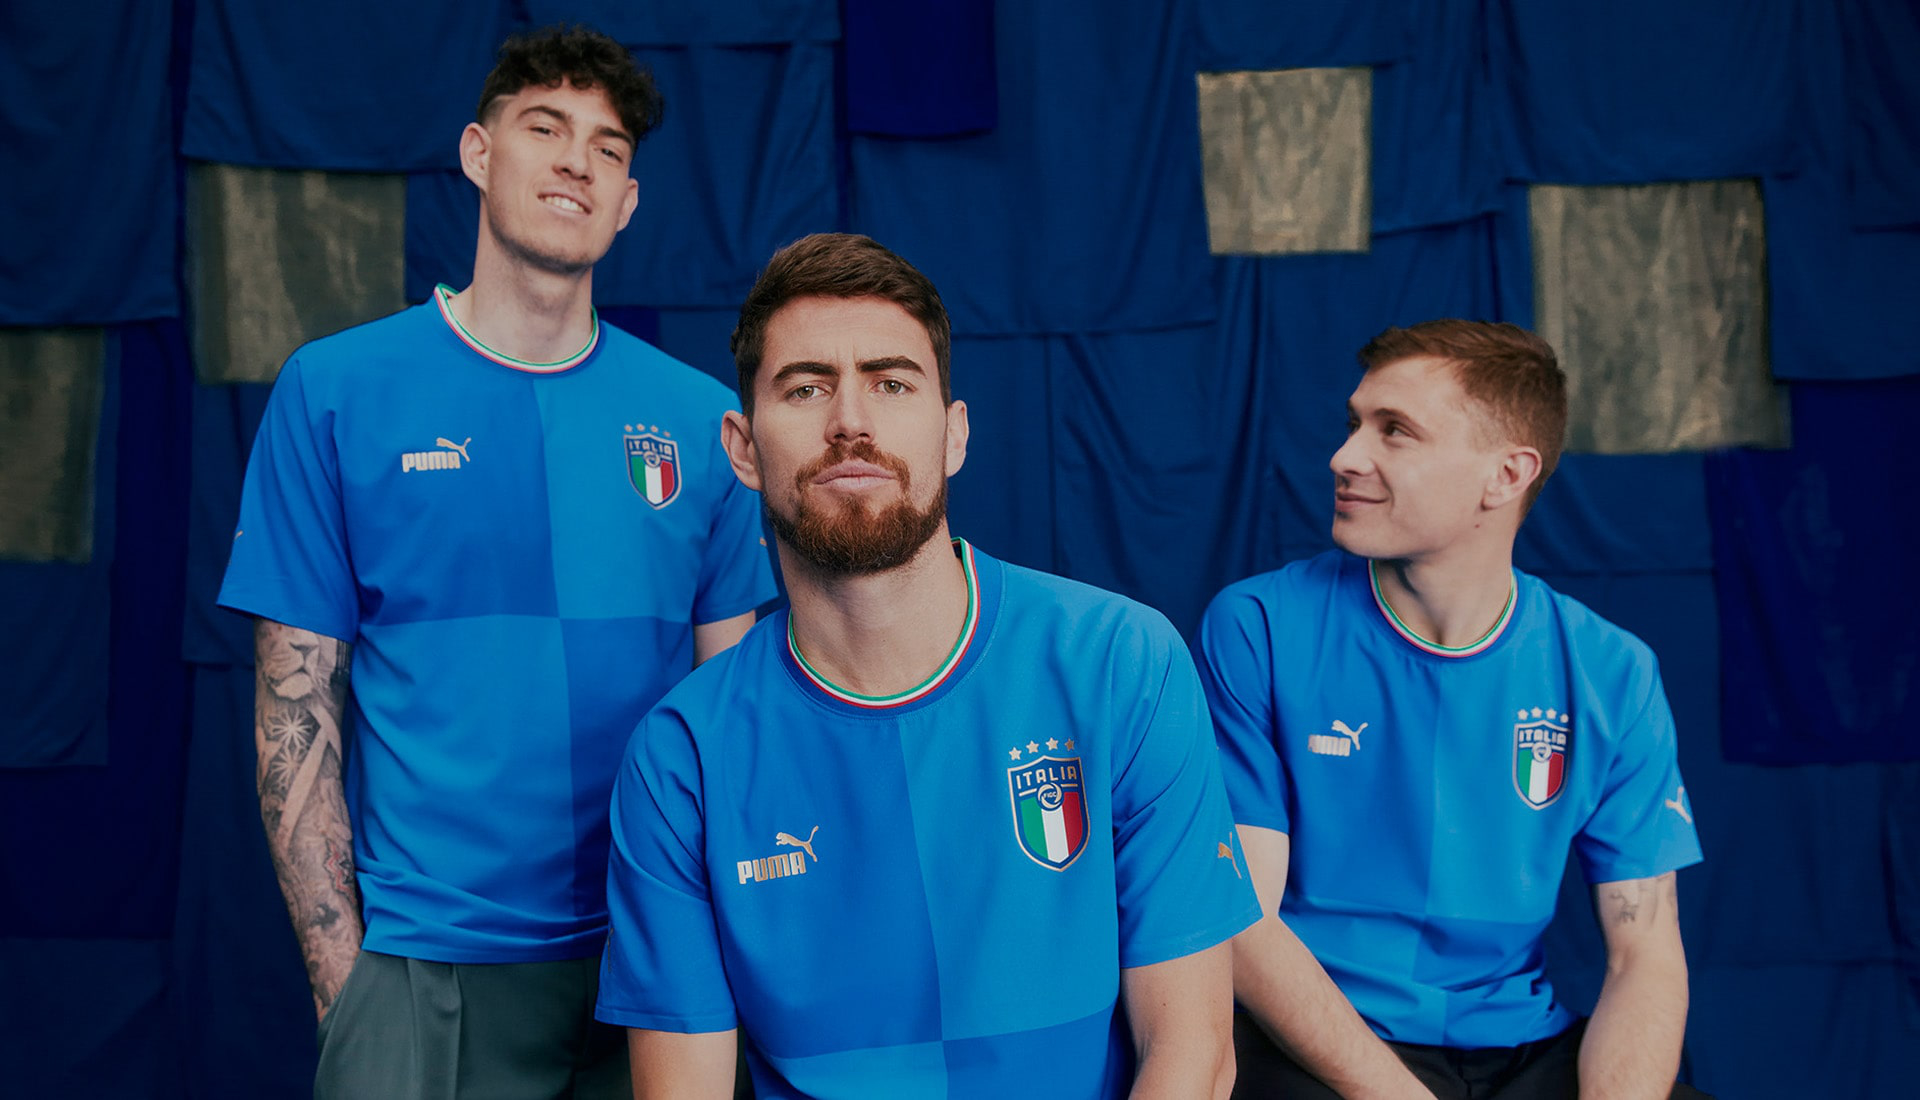 پیراهن اول تیم ملی فوتبال ایتالیا در فصل 2022